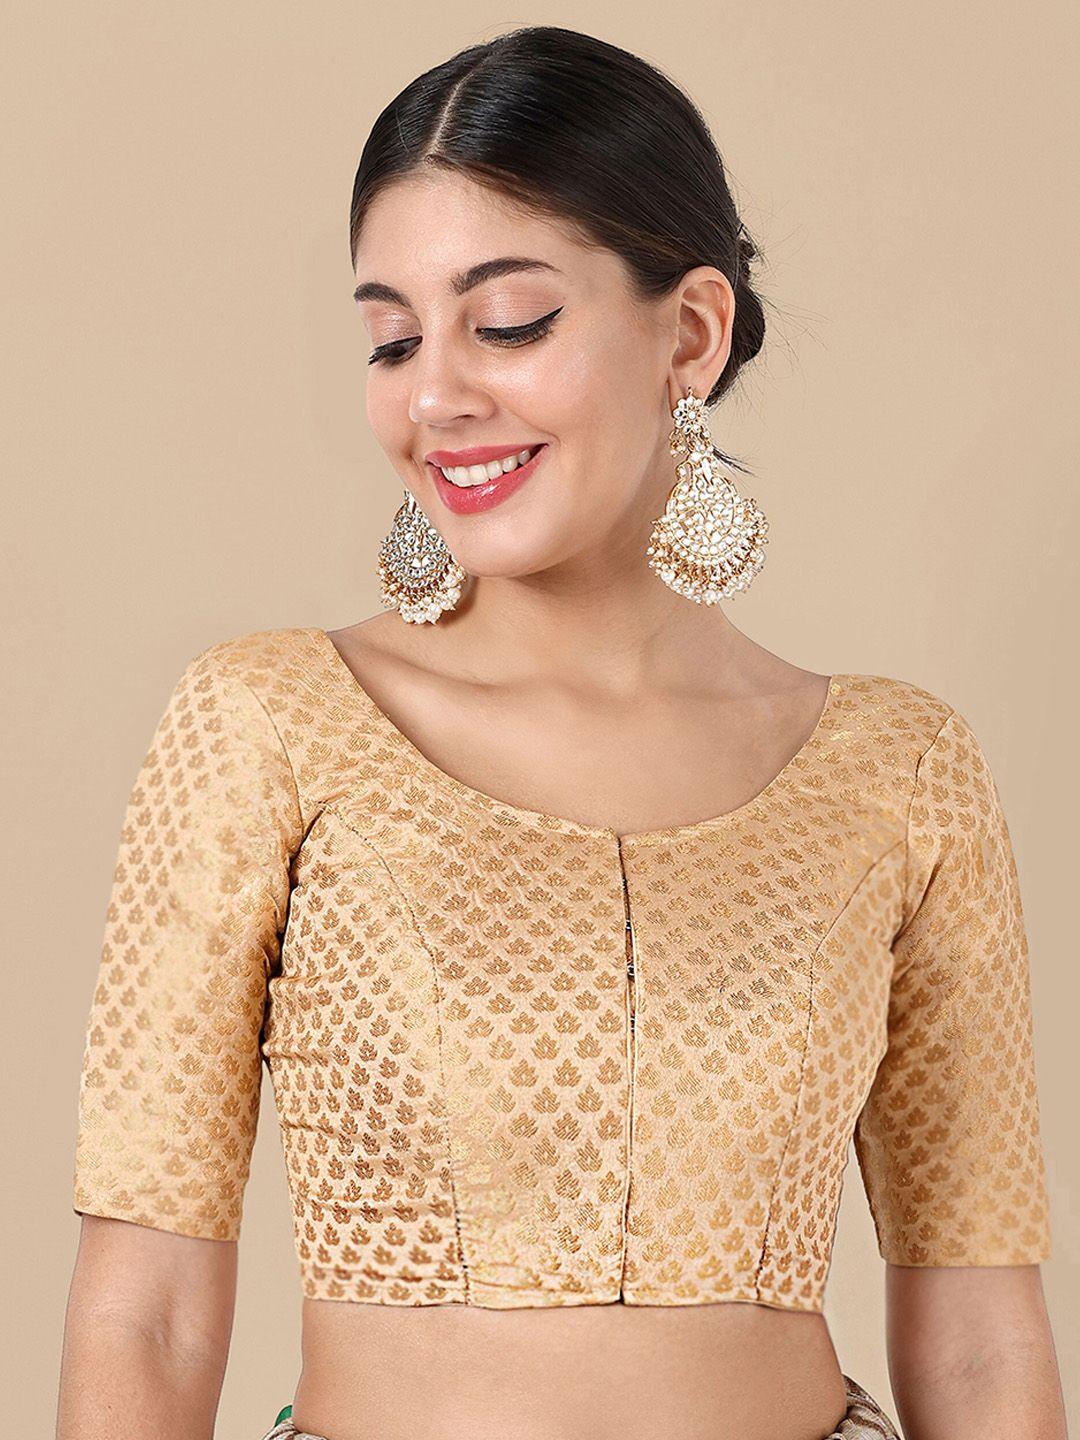 vardha woven design brocade detail saree blouse